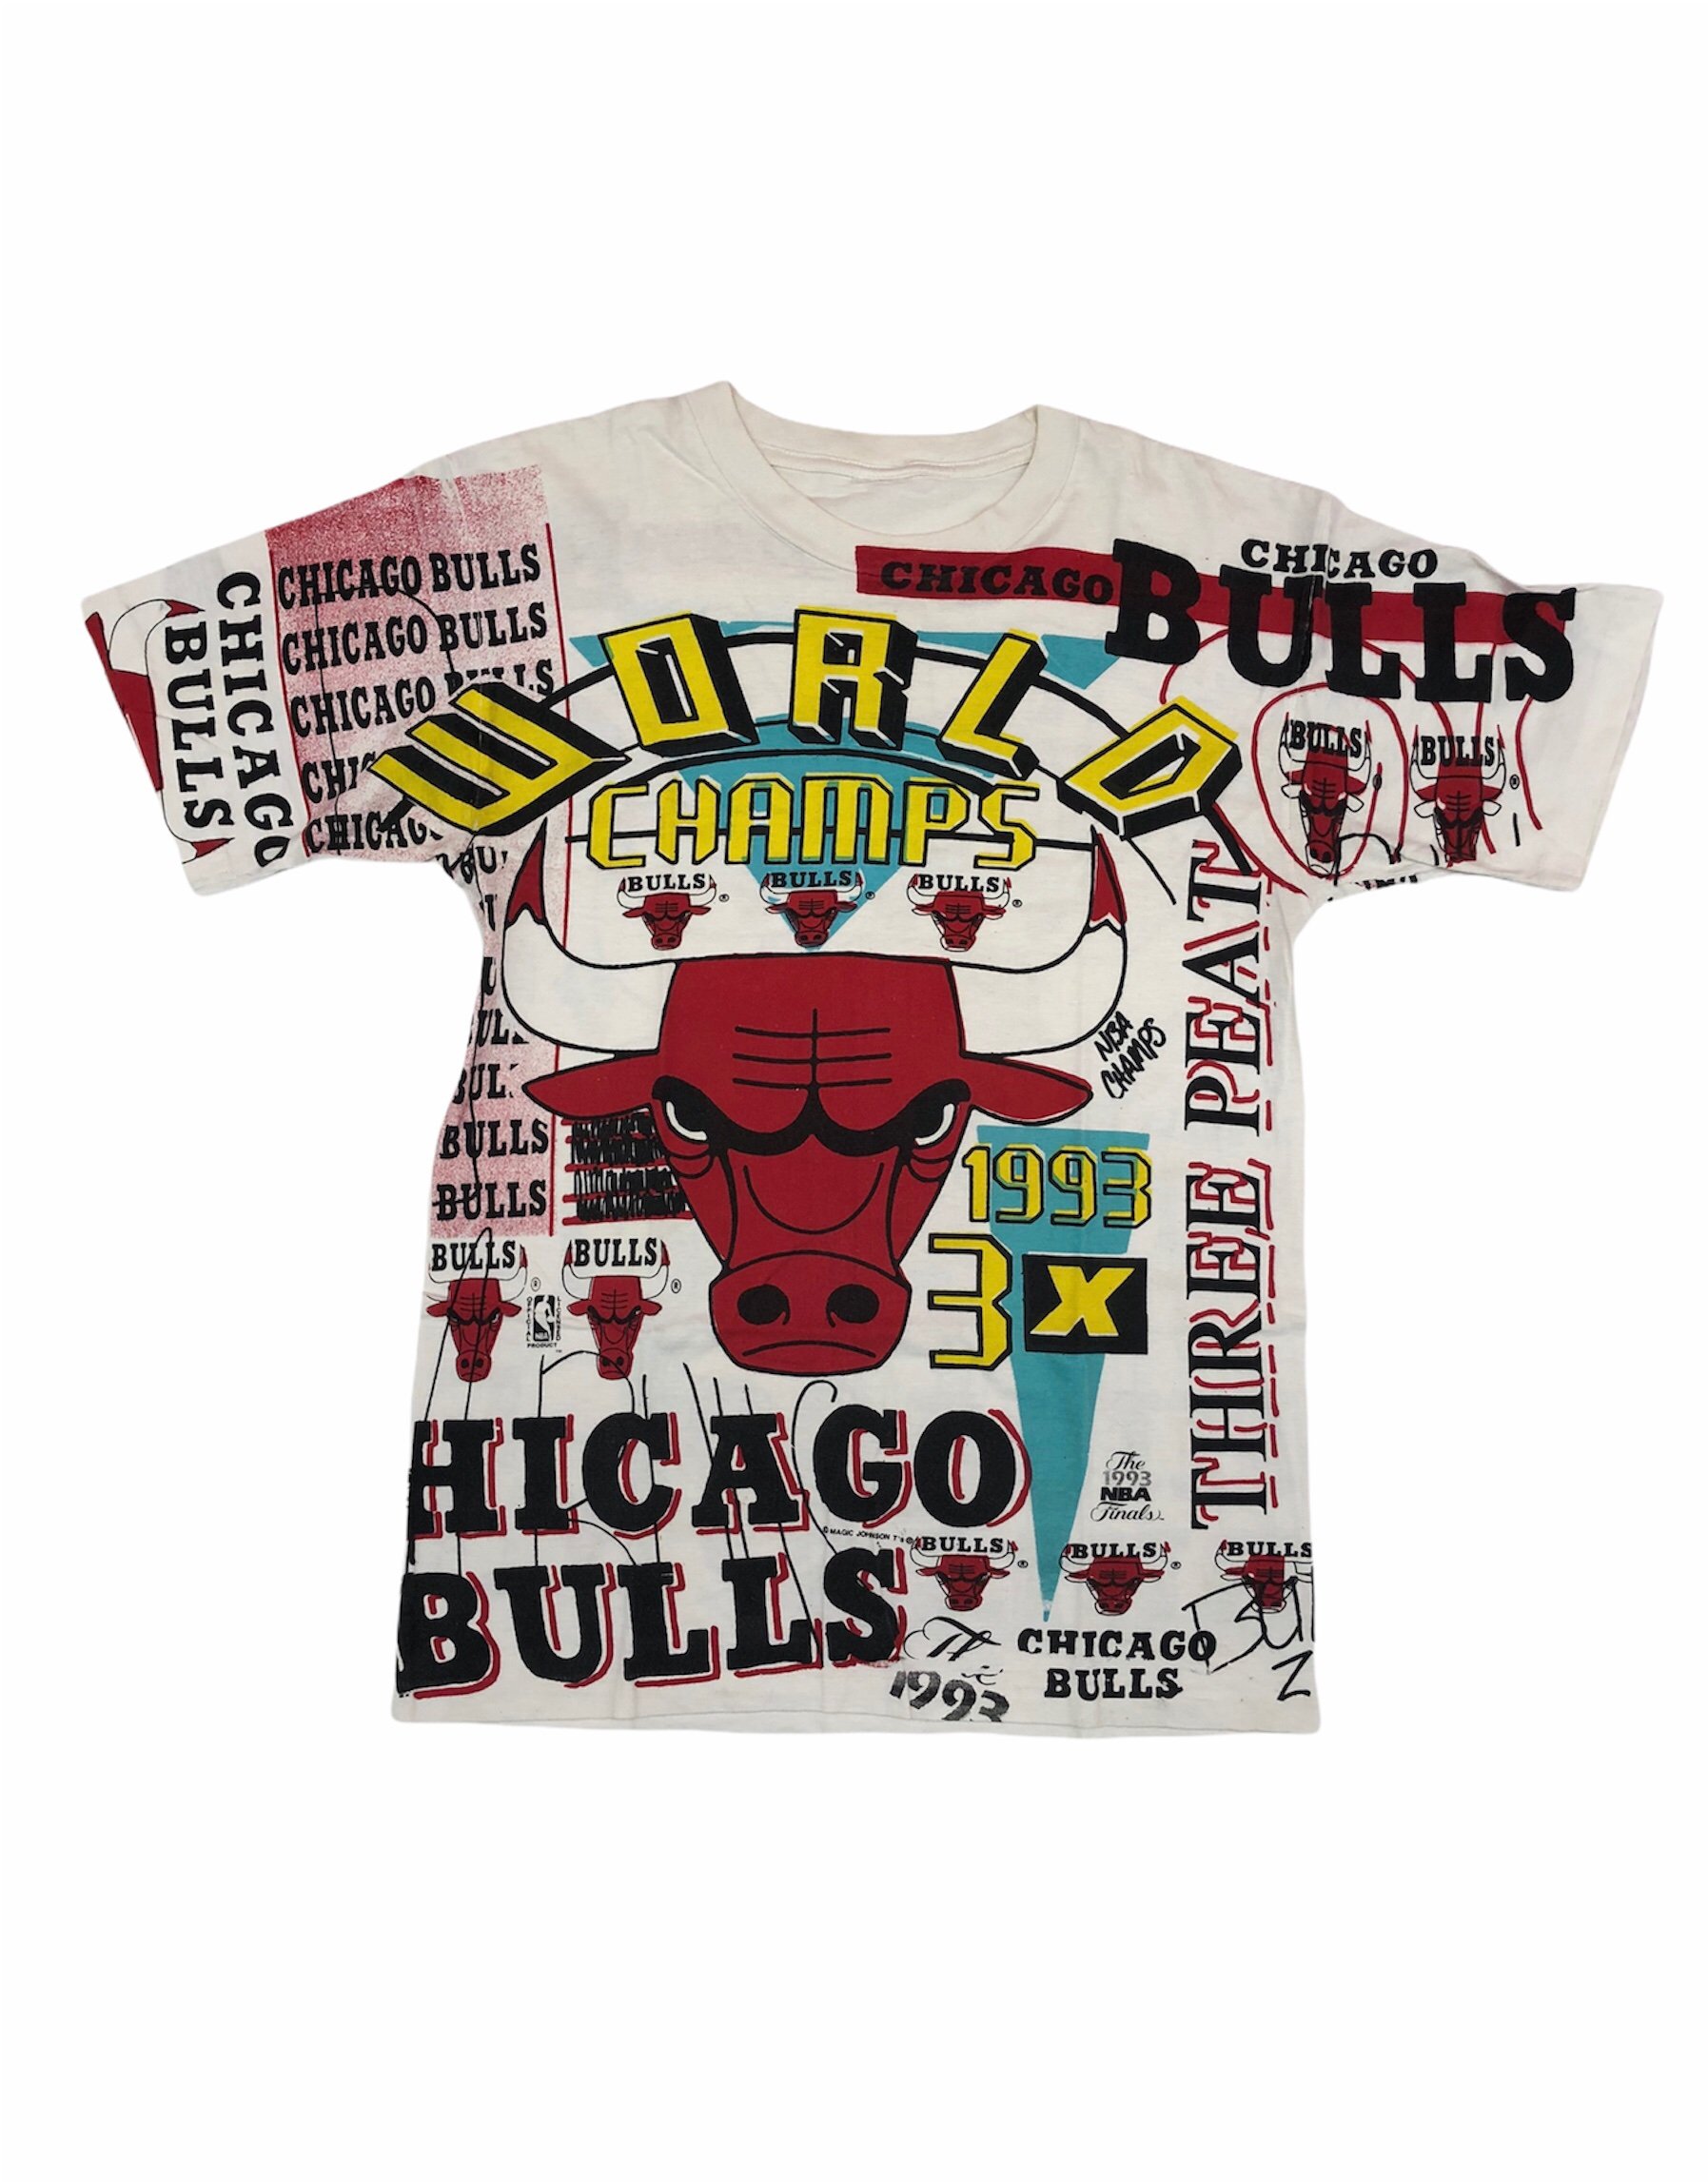 1993 bulls championship shirt